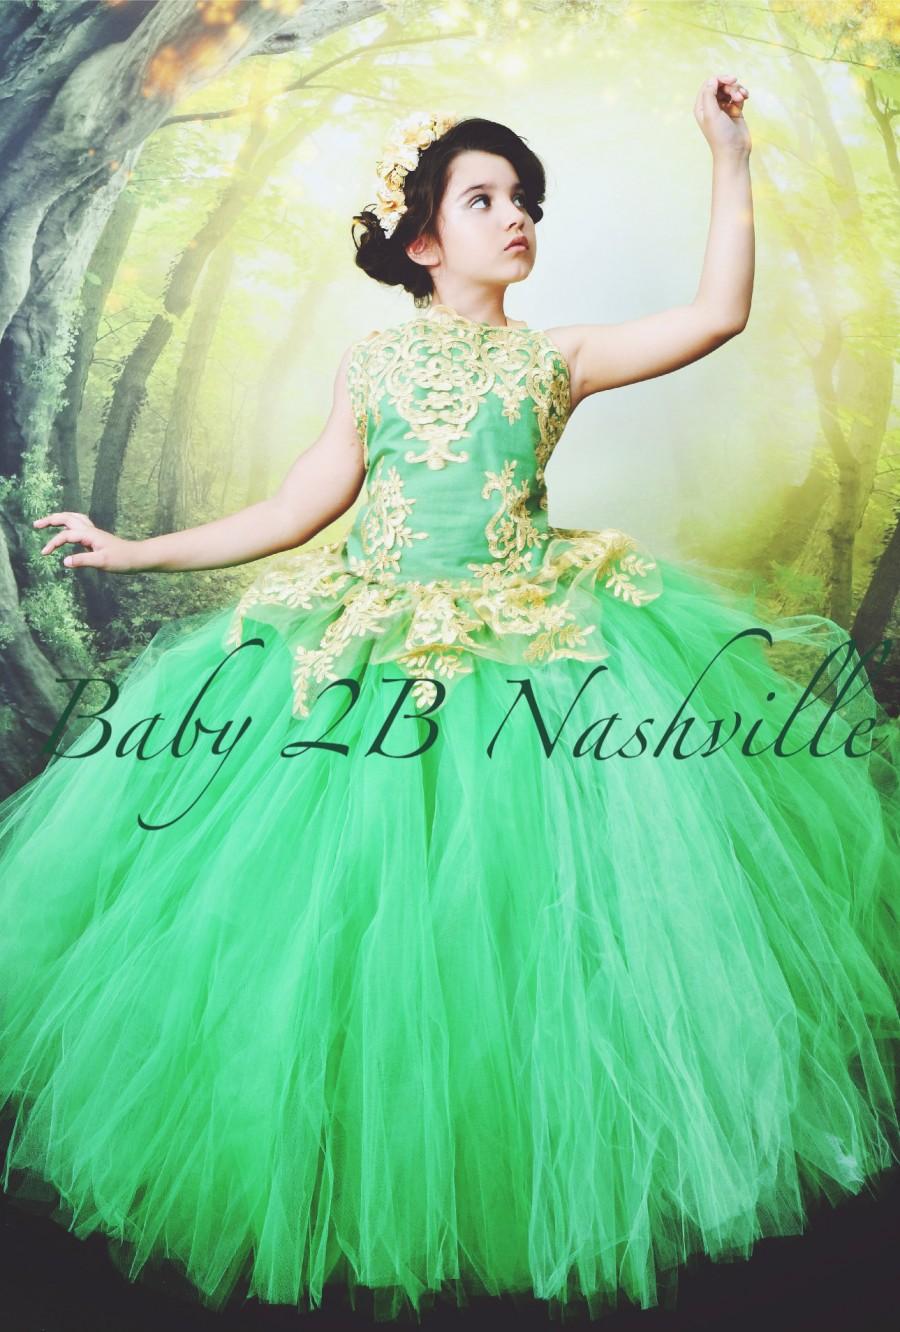 Mariage - Emerald Green Dress Gold Dress Flower Girl Dress Princess Dress Tulle Dress Lace Dress Wedding Dress Birthday Dress Tutu Dress Girls Dress